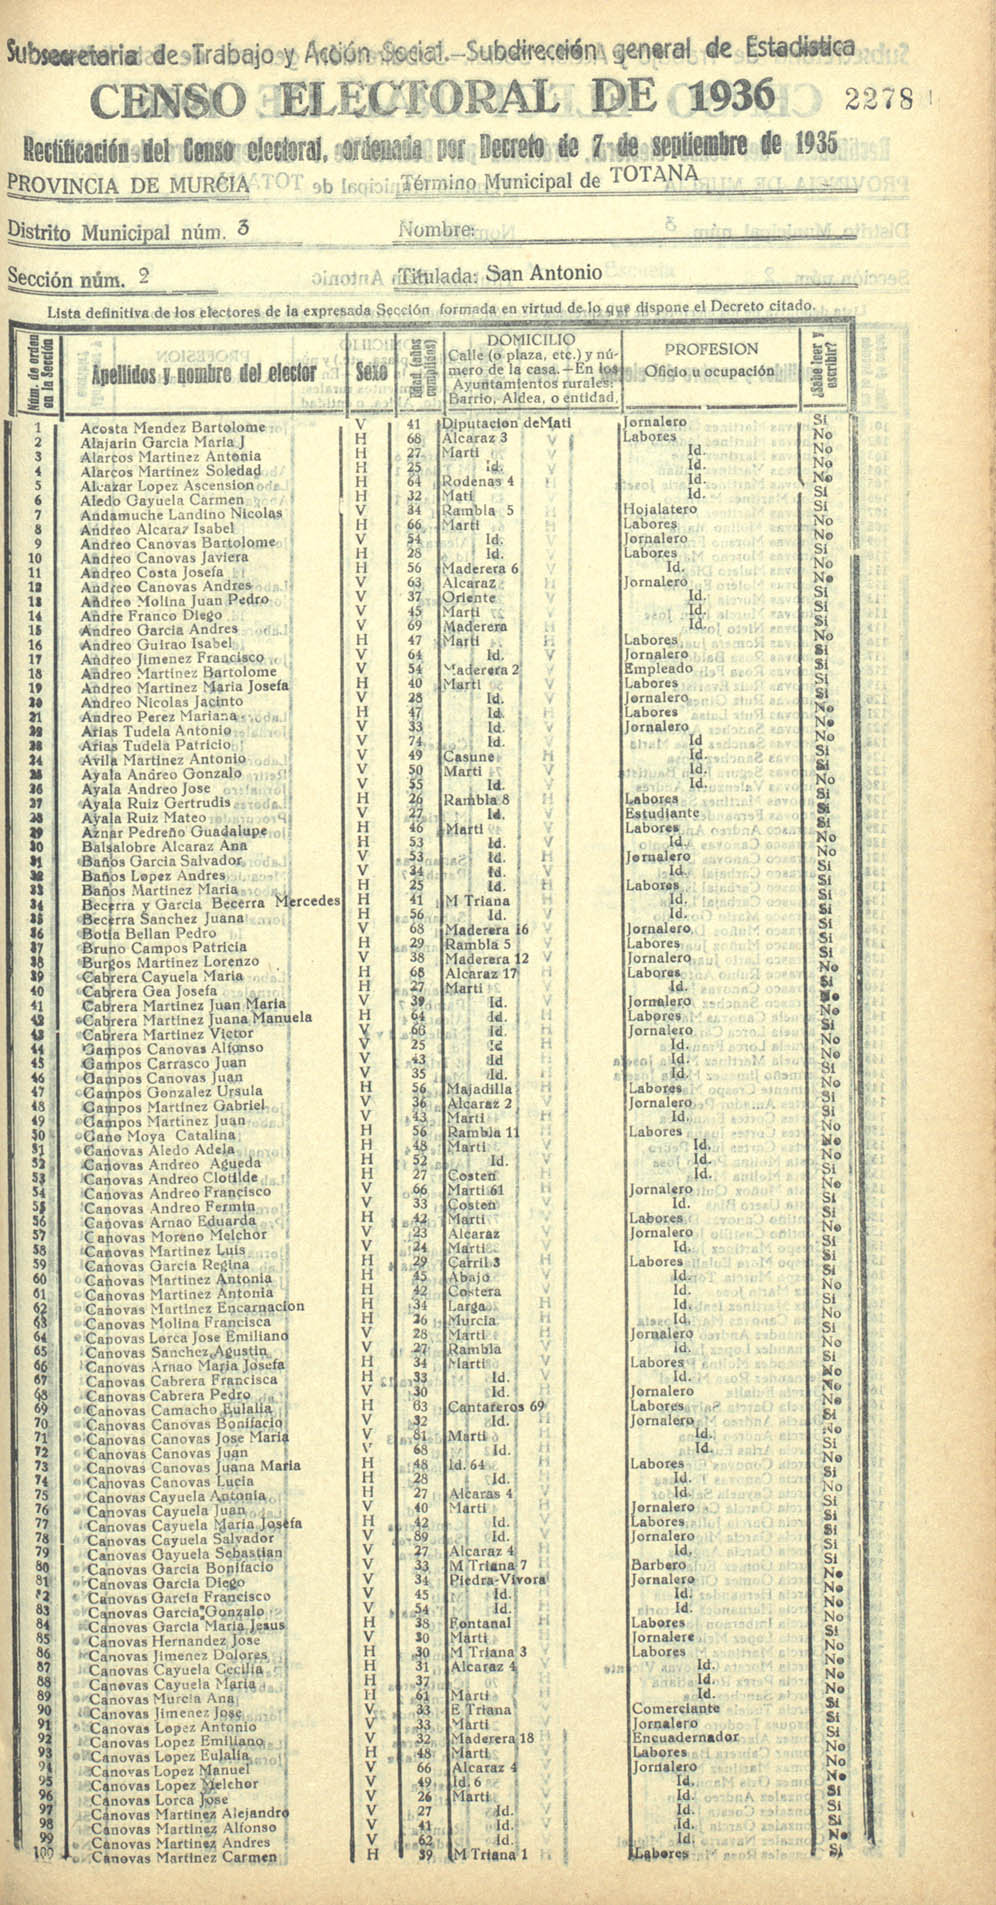 Censo electoral provincial de 1936. Totana. Distrito 3ª. Sección 2ª, San Antonio